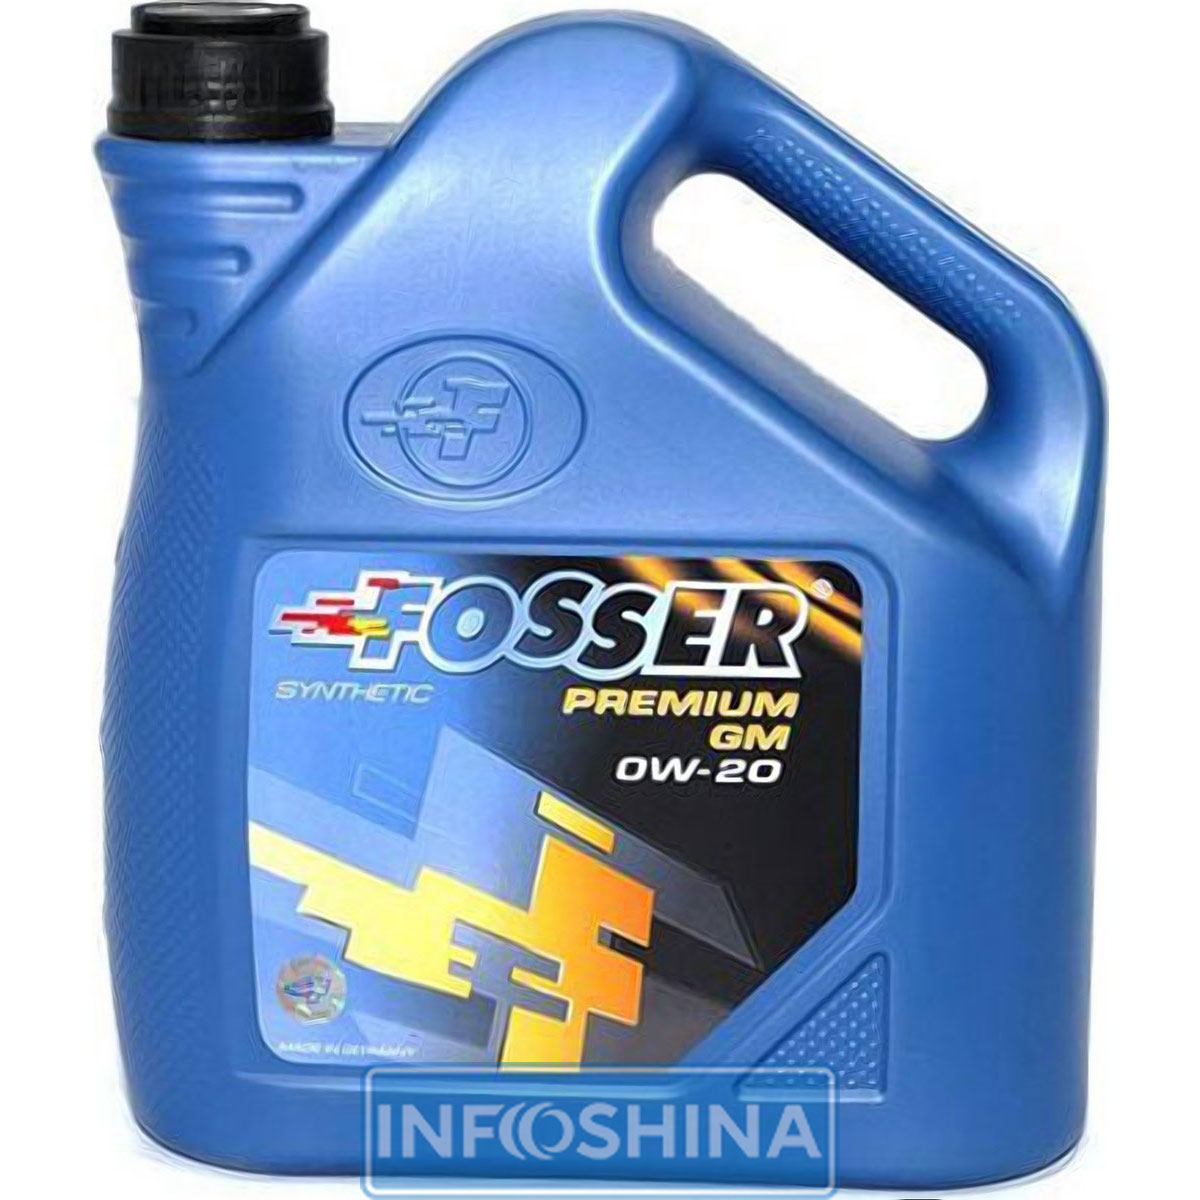 Fosser Premium GM 0W-20